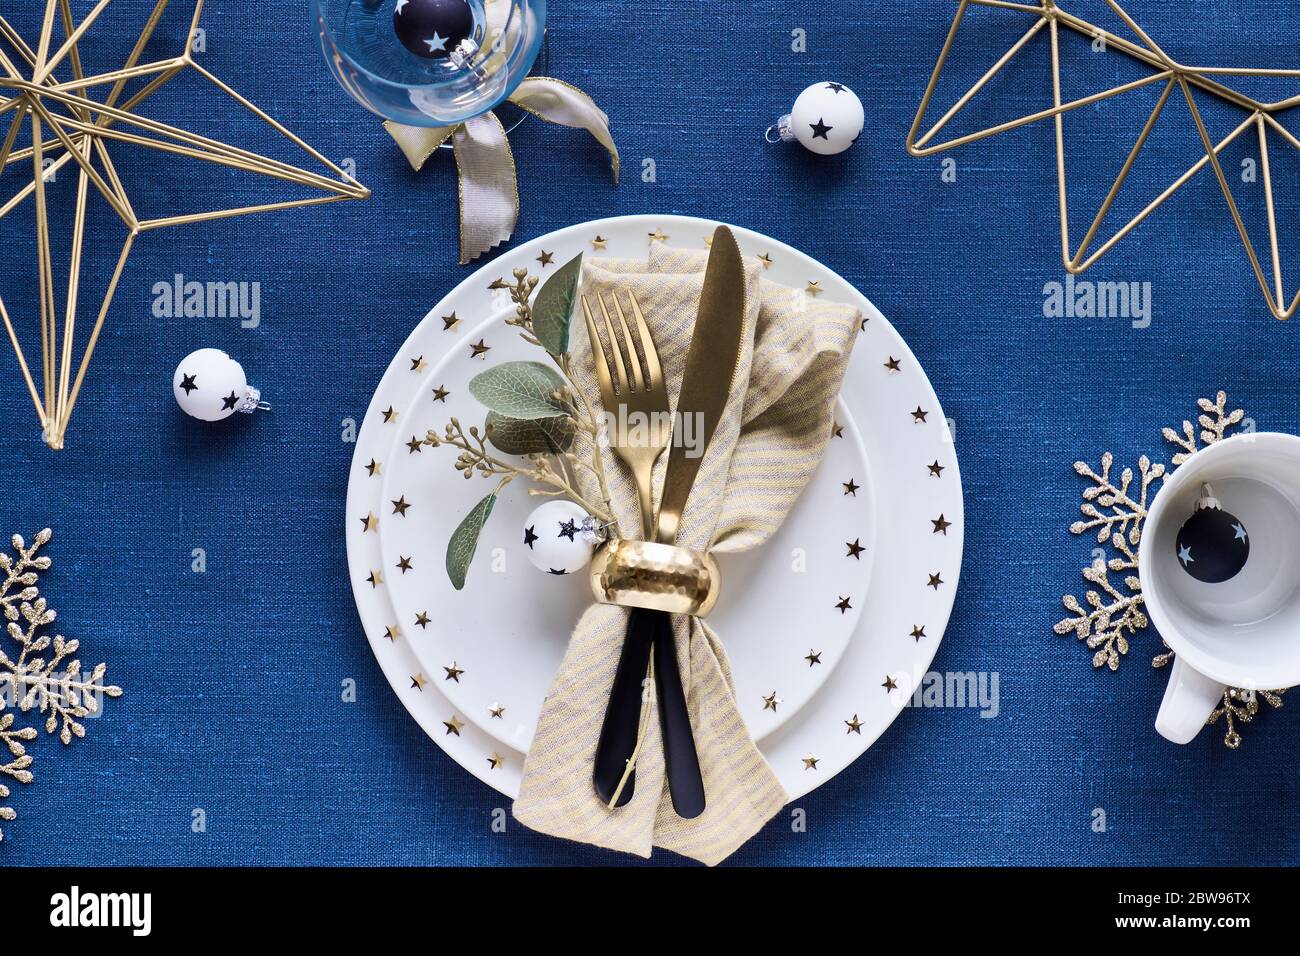 Tavolo natalizio con piatto bianco, utensili dorati e decorazioni in metallo geometrico dorato e fiocchi di neve dorati. Piatto su tessuto di lino blu scuro ta Foto Stock